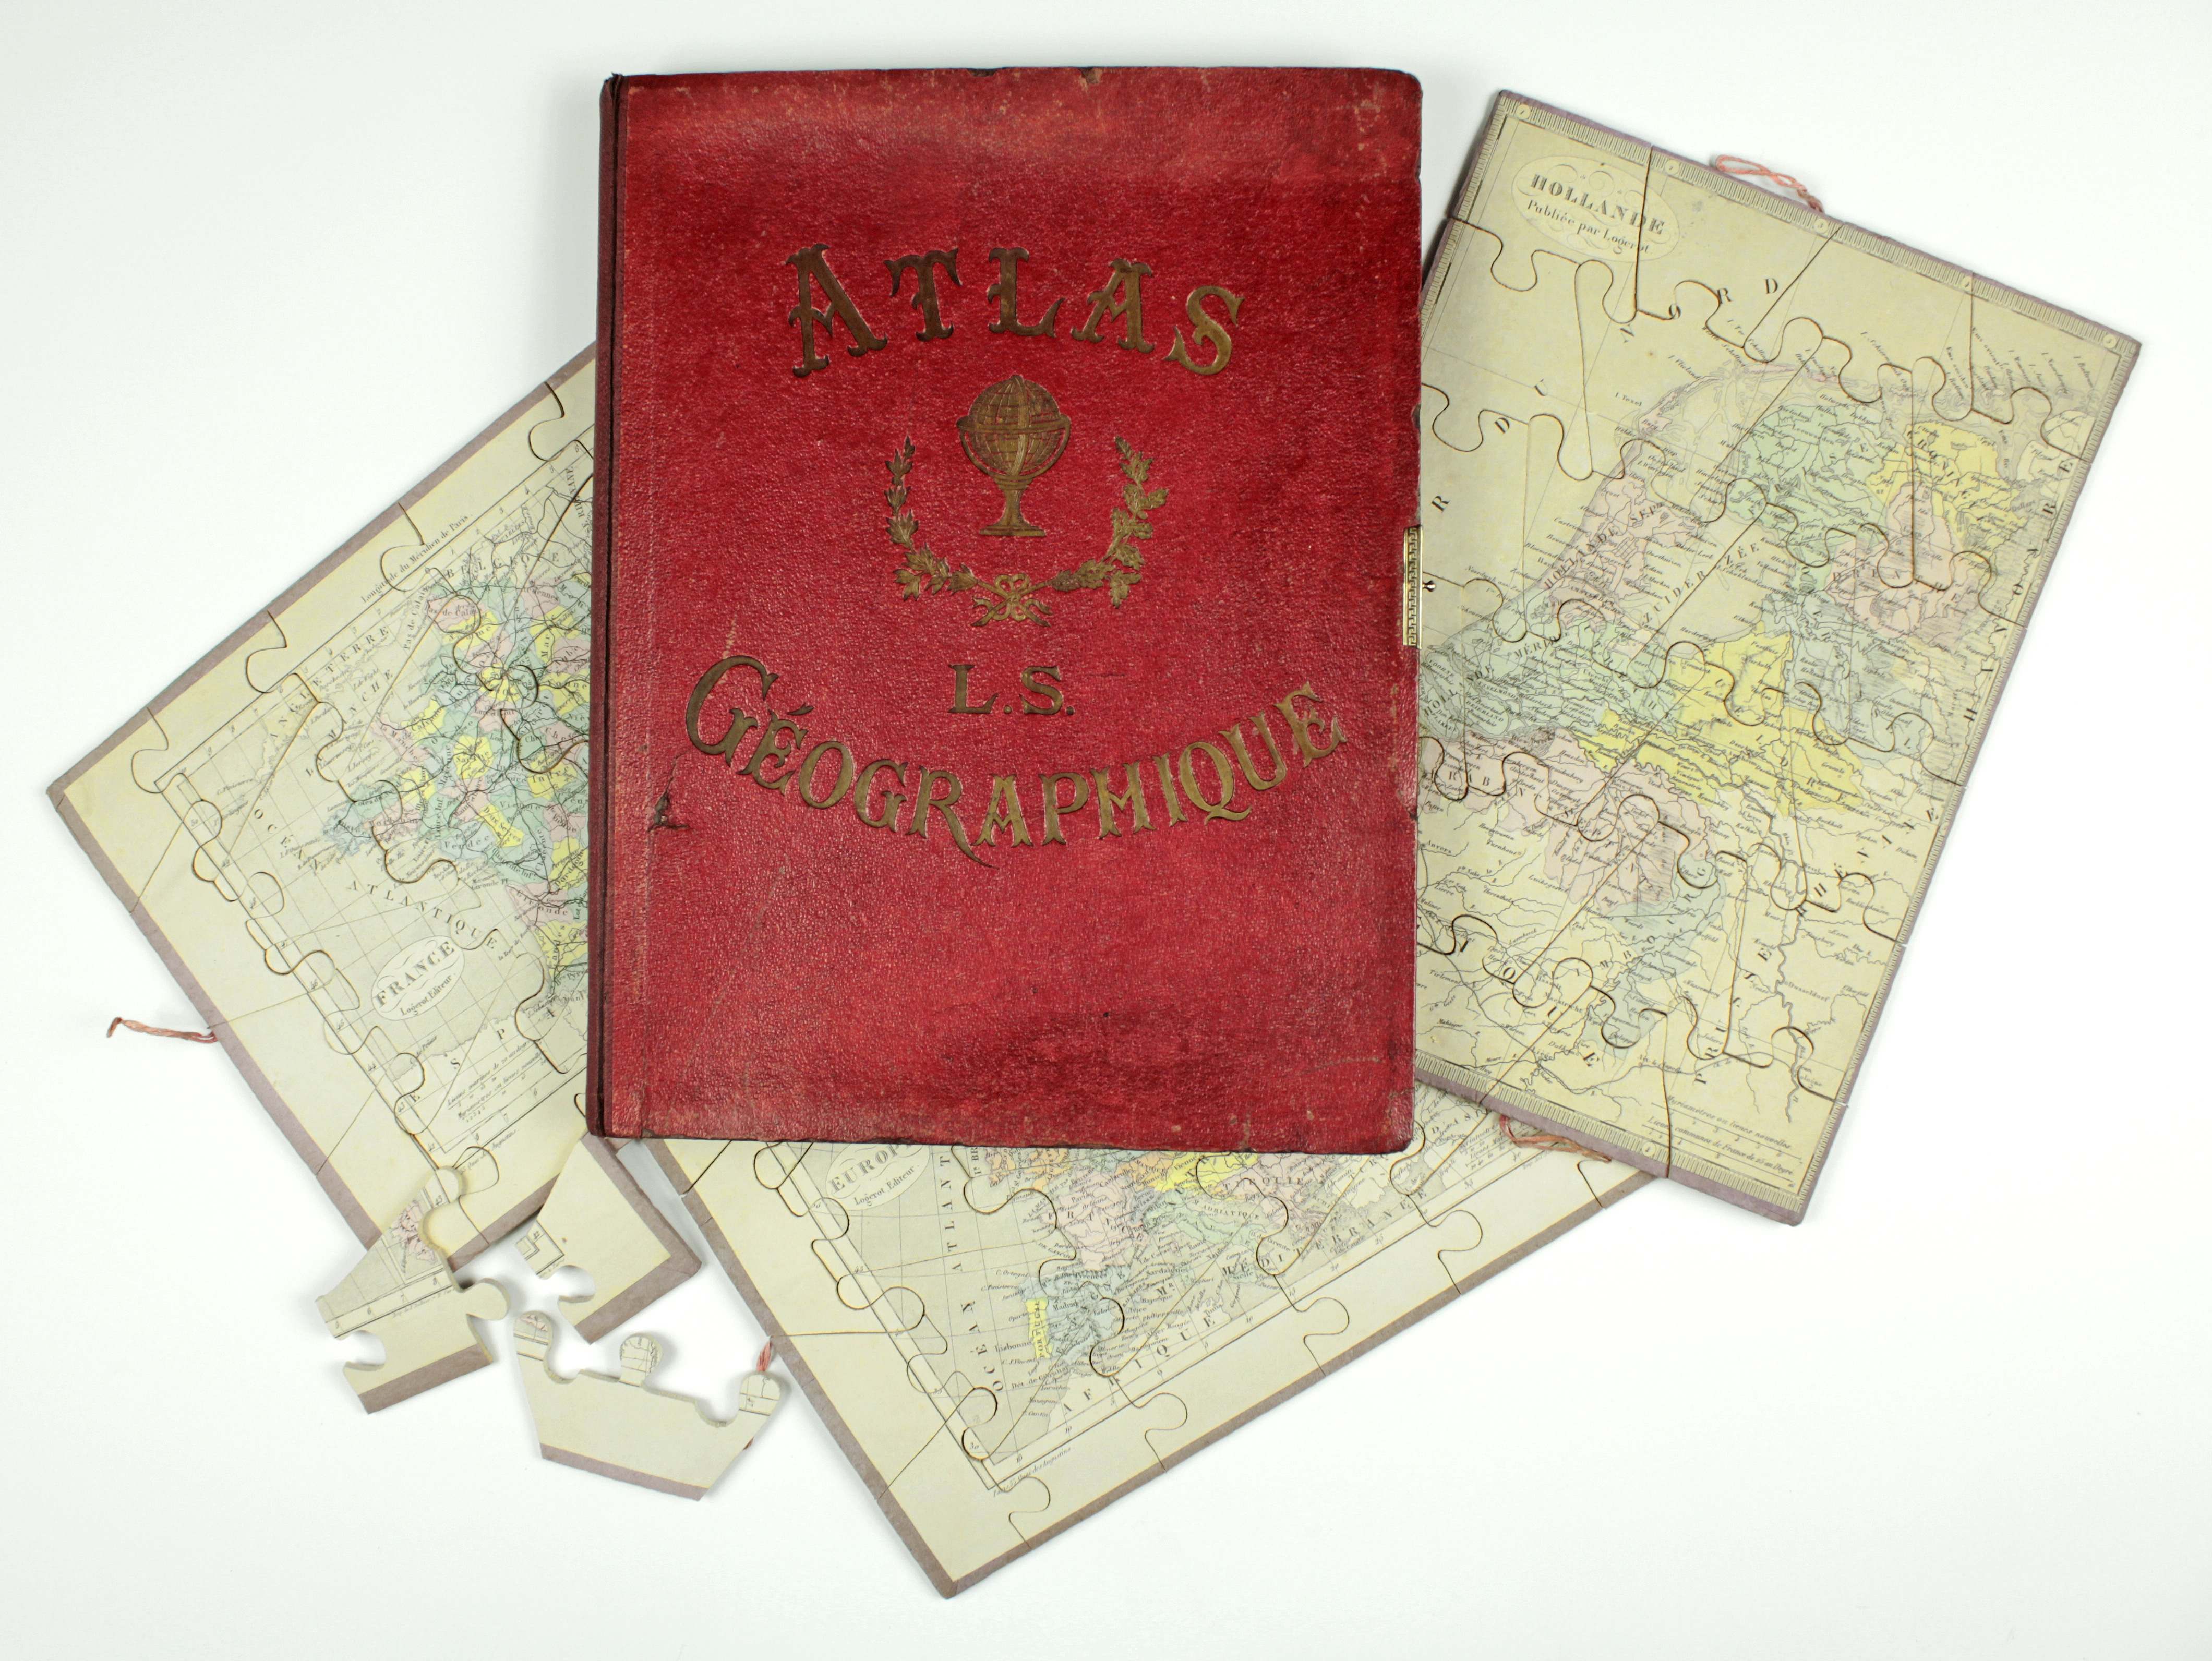 Geographie-Puzzle. Frankreich, um 1860, Atlas Géographique, drei Karten von Europa, Frankreich und